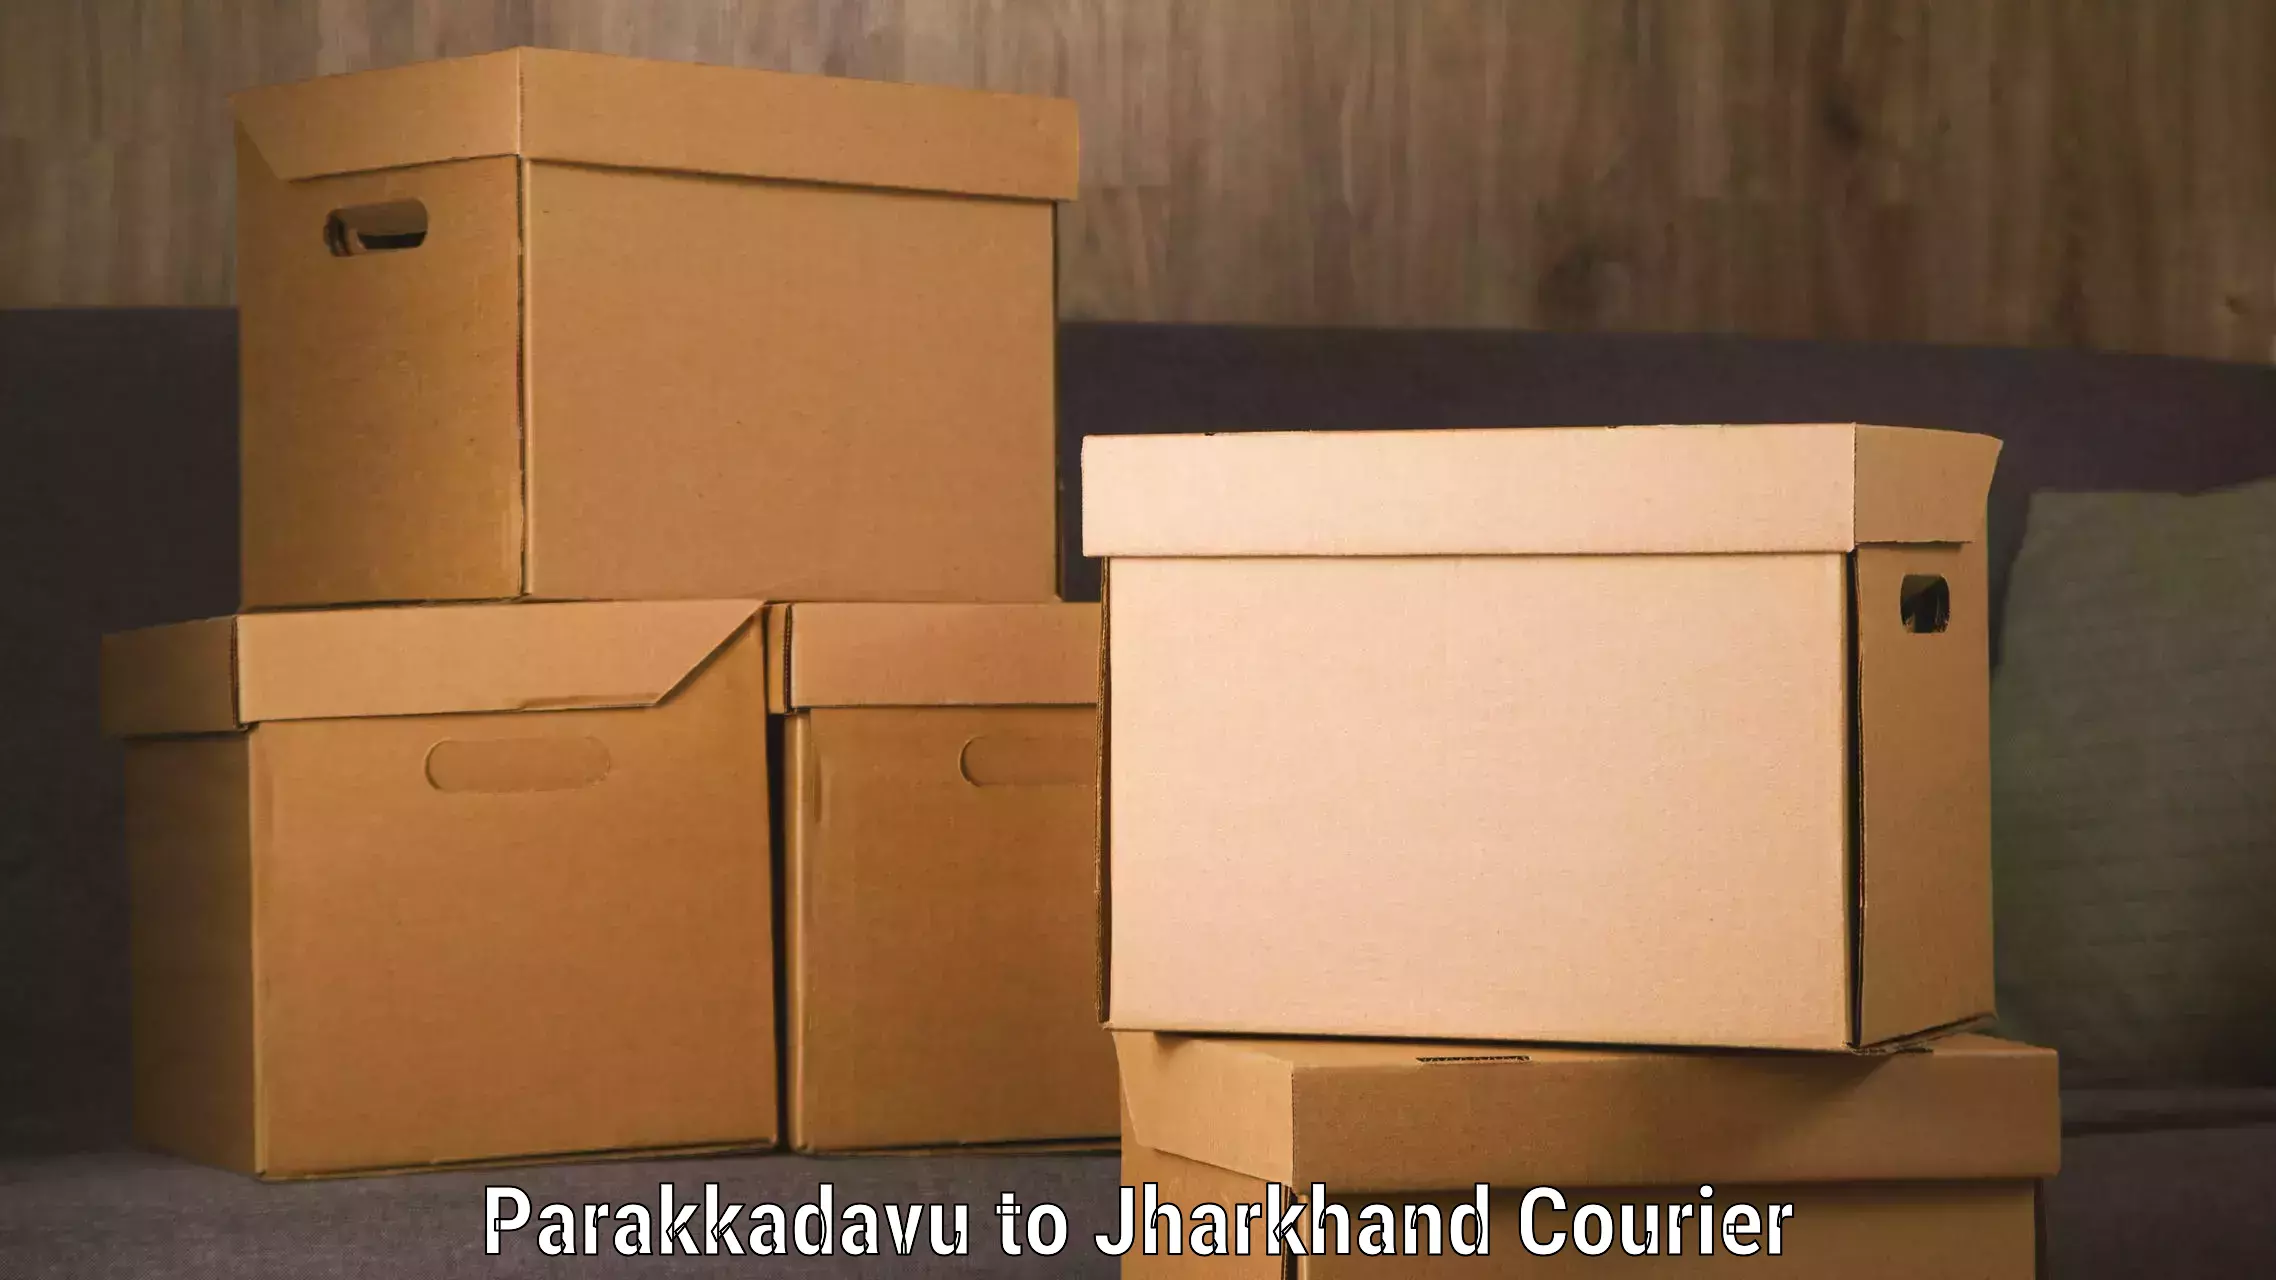 Multi-service courier options Parakkadavu to Bokaro